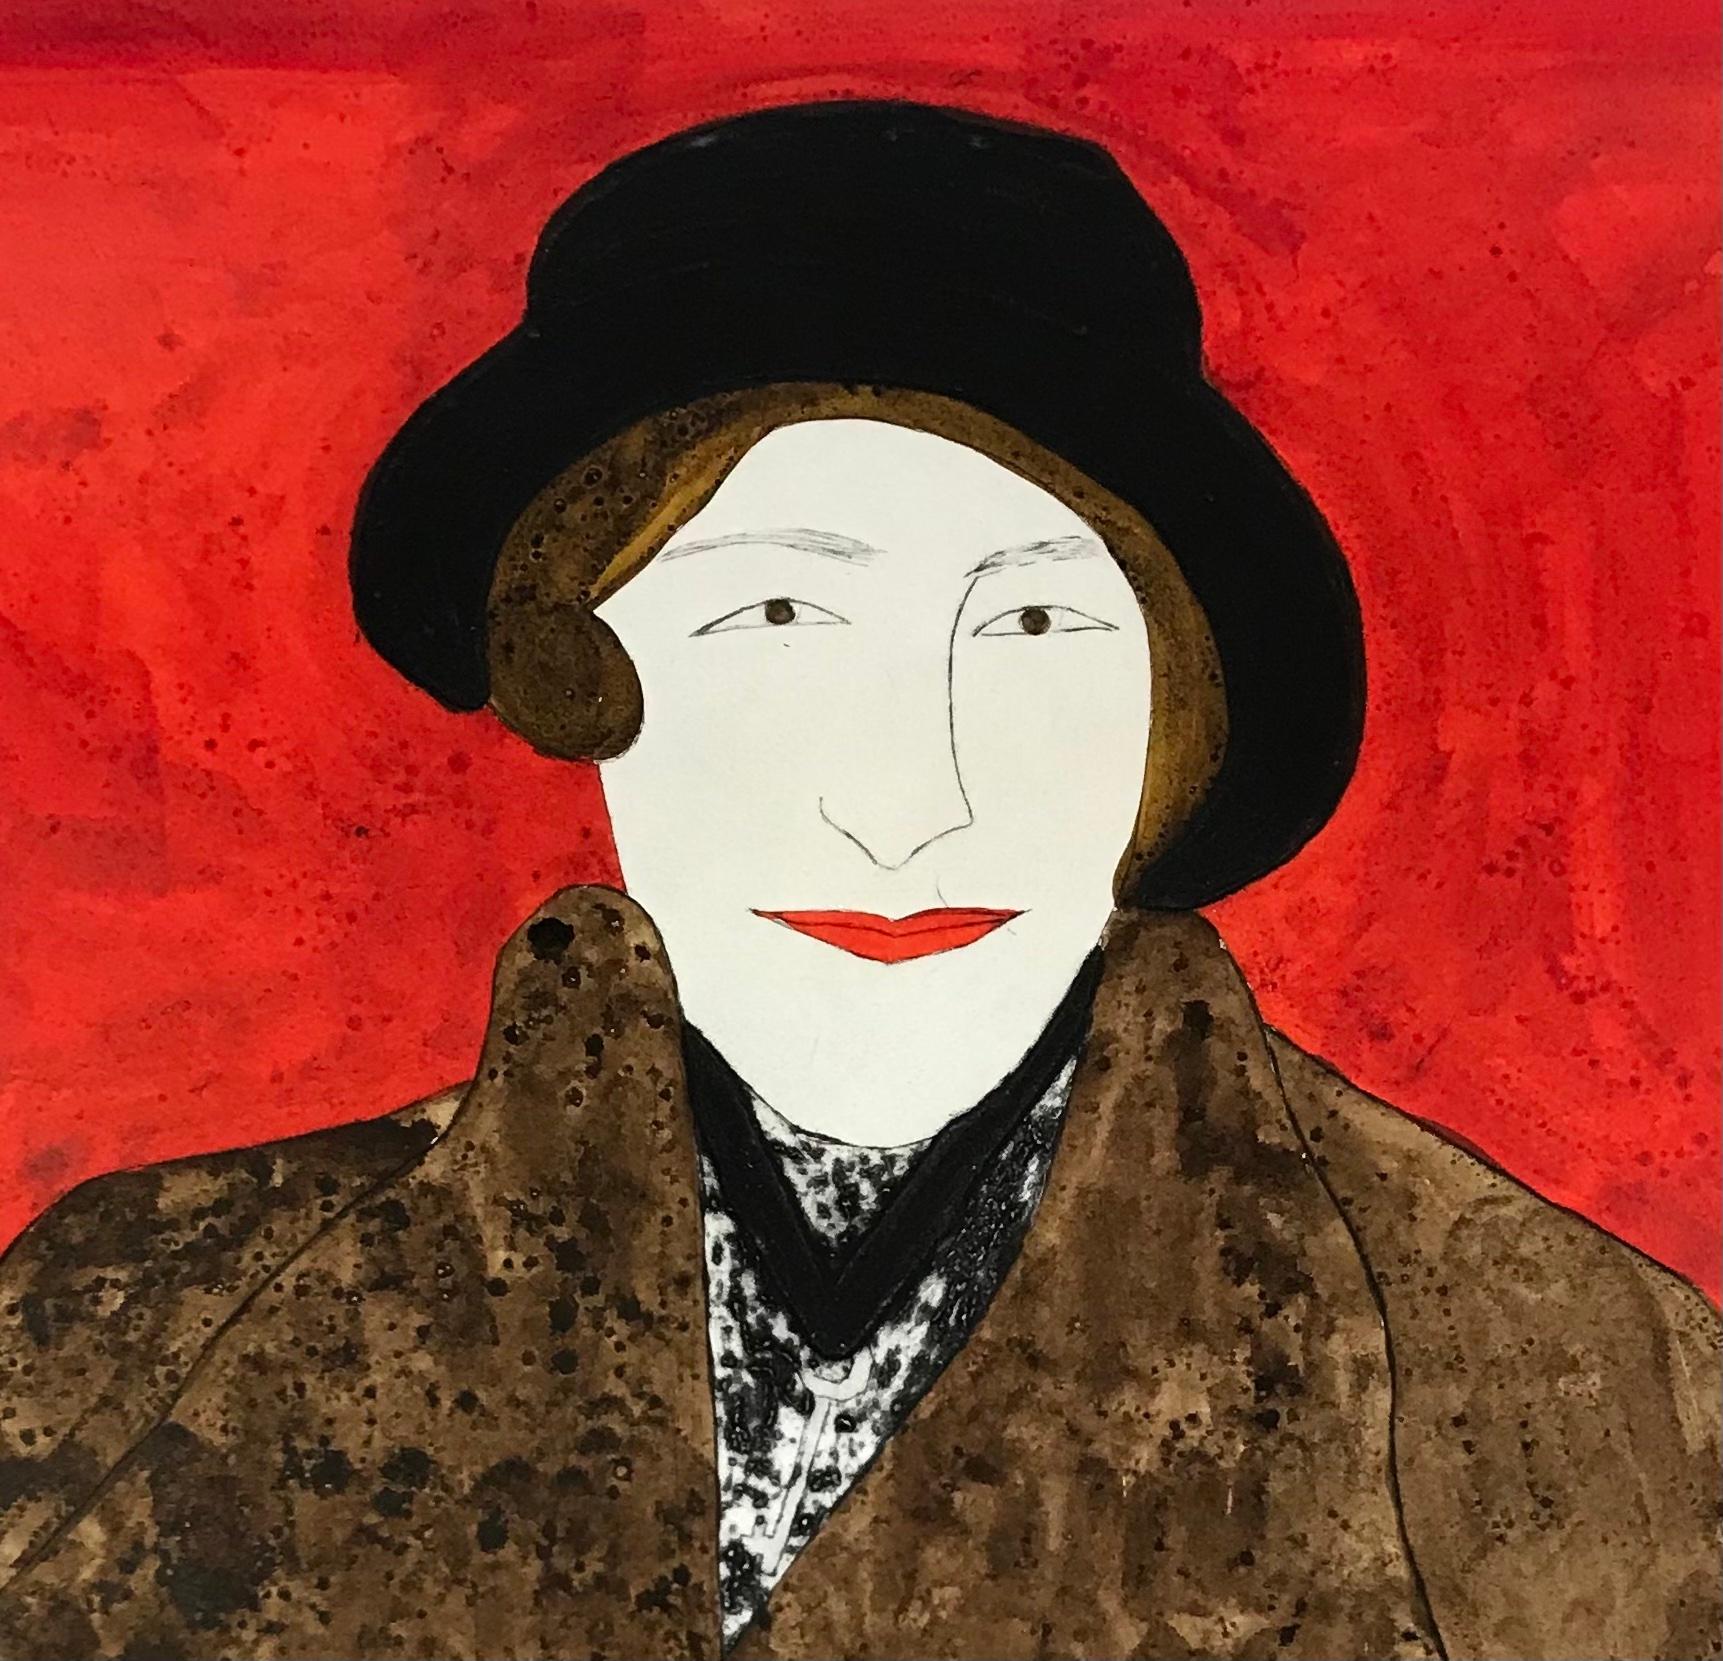 Agatha Christie est une gravure à la pointe sèche en édition limitée, colorée à la main, réalisée par Kate Boxer. On y voit l'écrivain icnonique coiffé d'un chapeau noir et vêtu d'un manteau de fourrure marron sur fond rouge.

Dame Agatha Christie